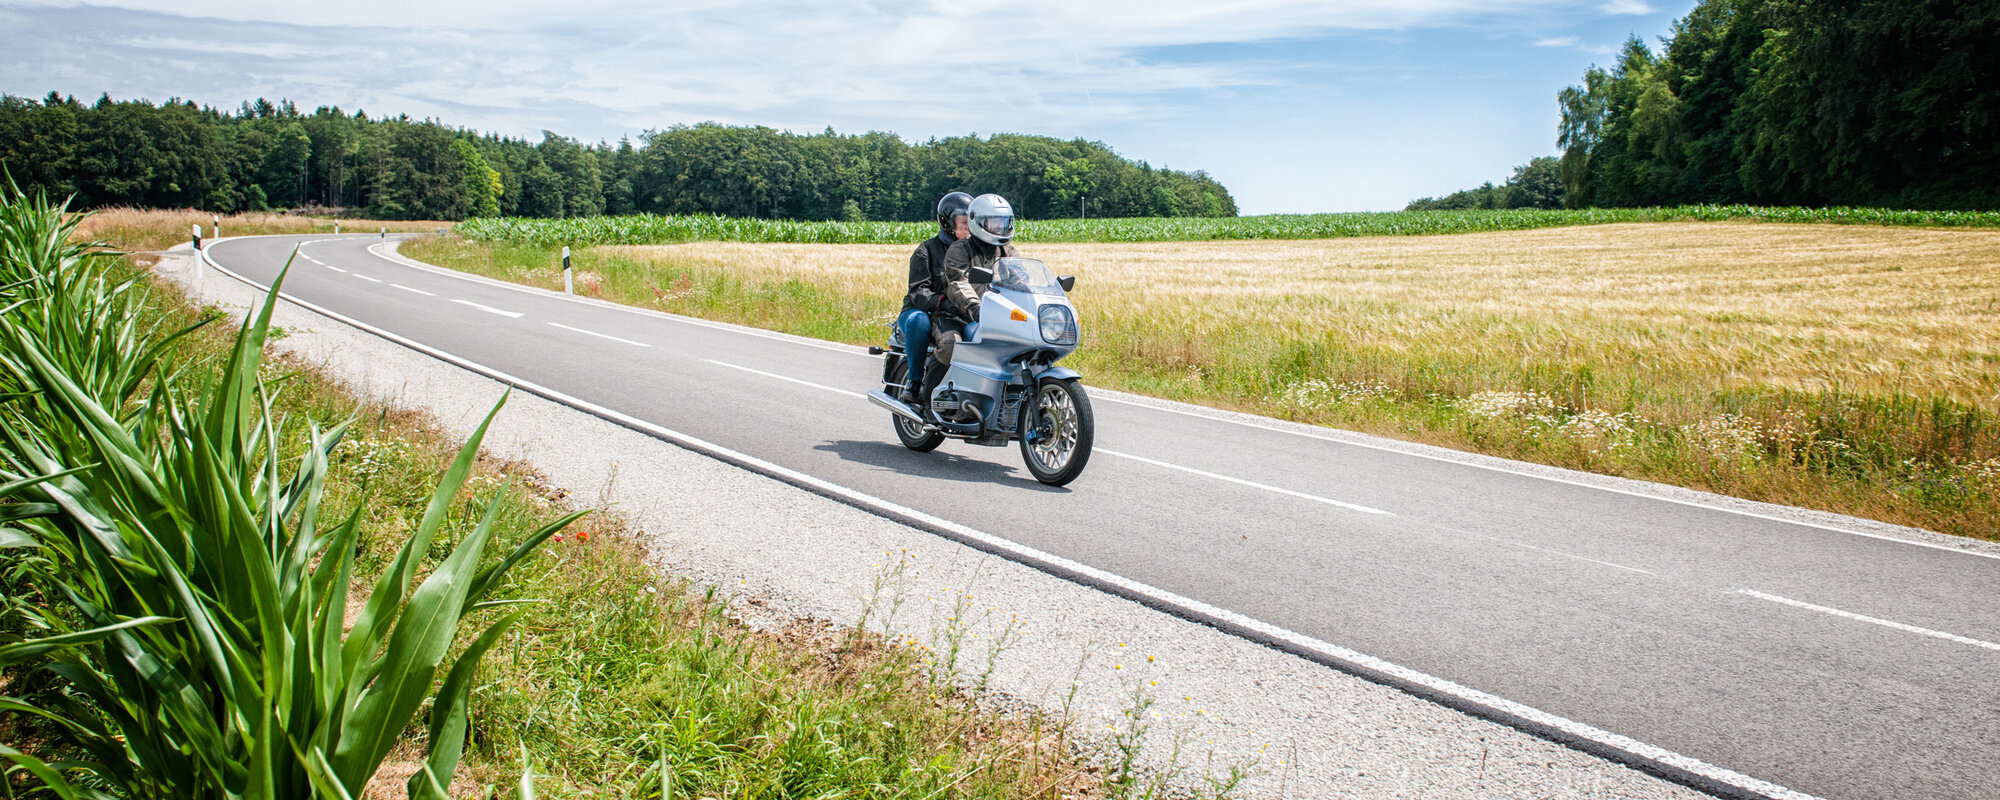 Zwei Personen auf einem Motorrad fahren auf einer Straße zwischen Wiesenfeldern.